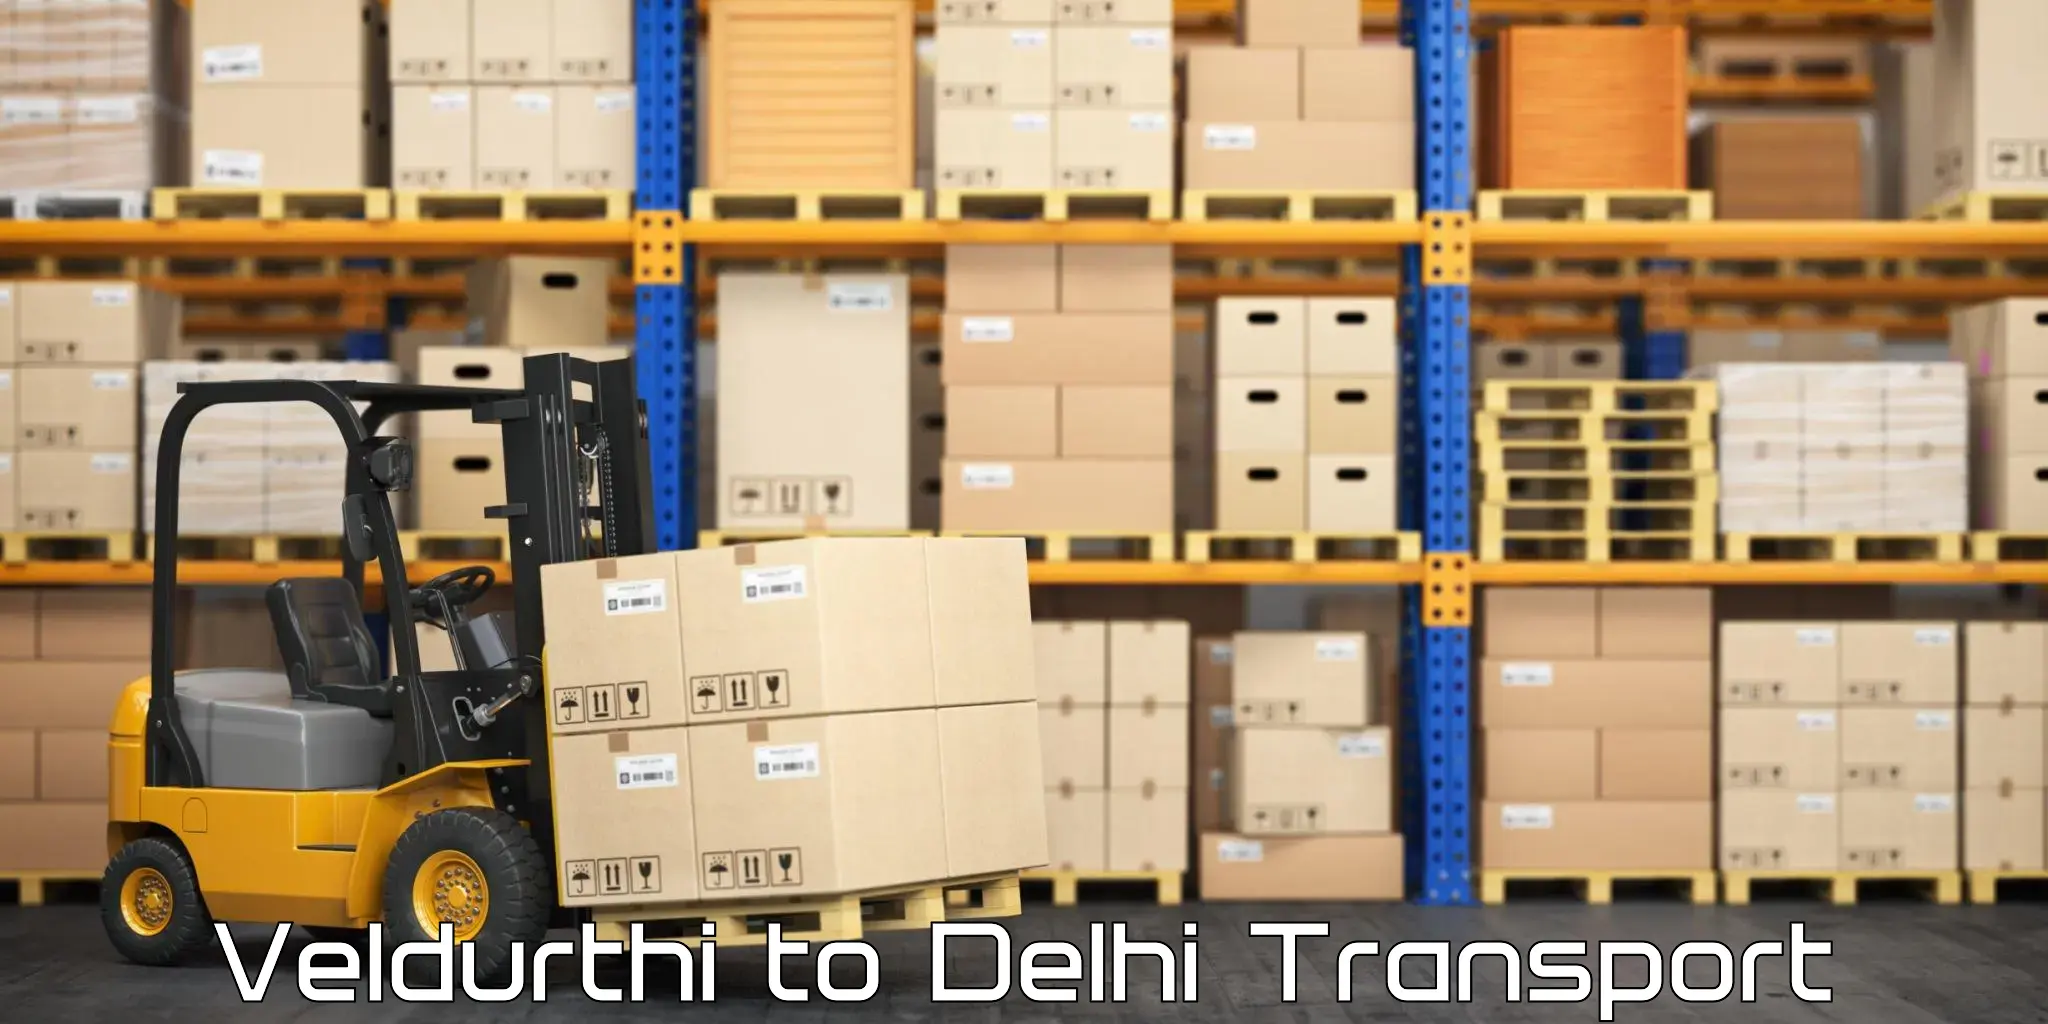 Transport in sharing Veldurthi to Delhi